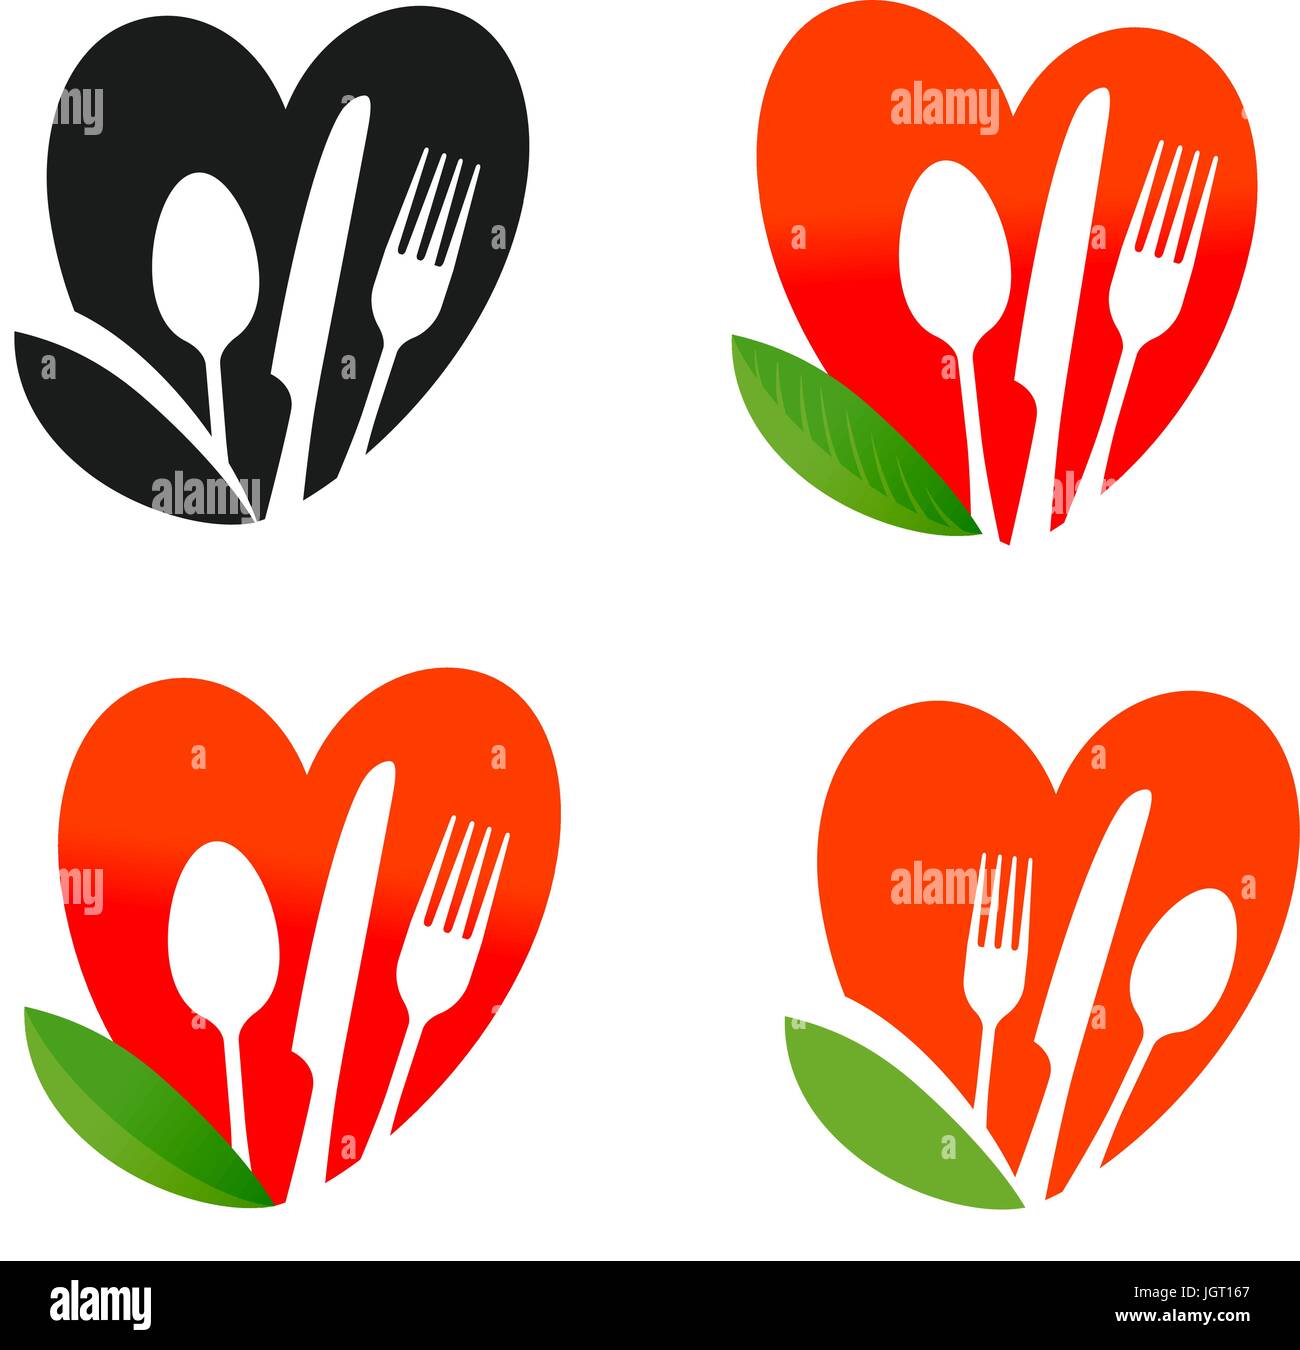 Logo de l'alimentation naturelle, organique. La nutrition, l'alimentation saine, l'icône vegan. Vector illustration Illustration de Vecteur